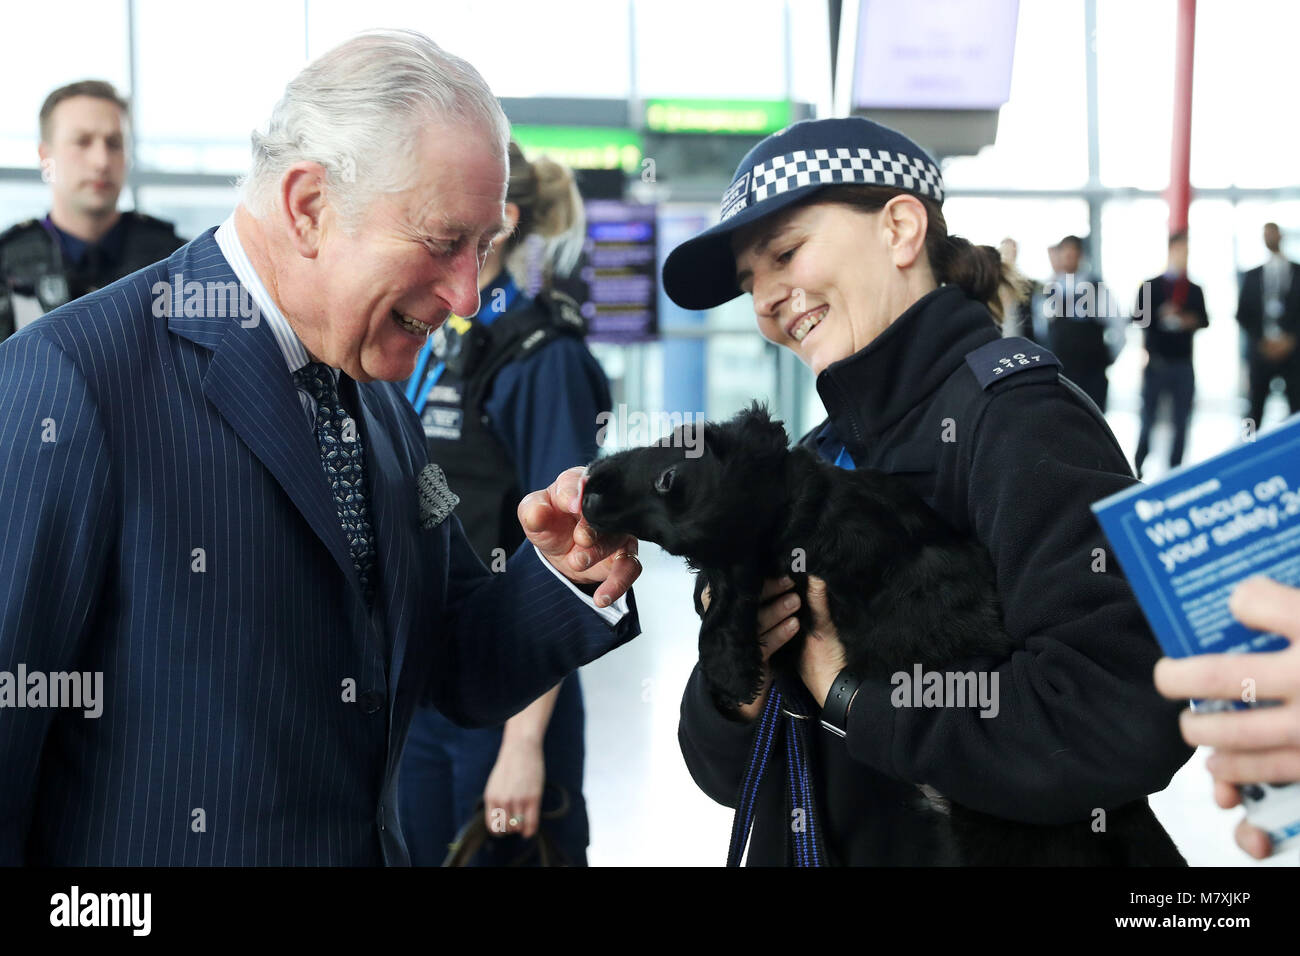 Il Principe di Galles incontra un Cocker Spaniel chiamato Ned, un tirocinante esplosivi cerca cane, durante una visita all' Aeroporto di Heathrow di Londra, come egli mette in evidenza il lavoro svolto da sicurezza e personale dell aeroporto di mantenere il paese e per l'aeroporto di sicuro. Foto Stock